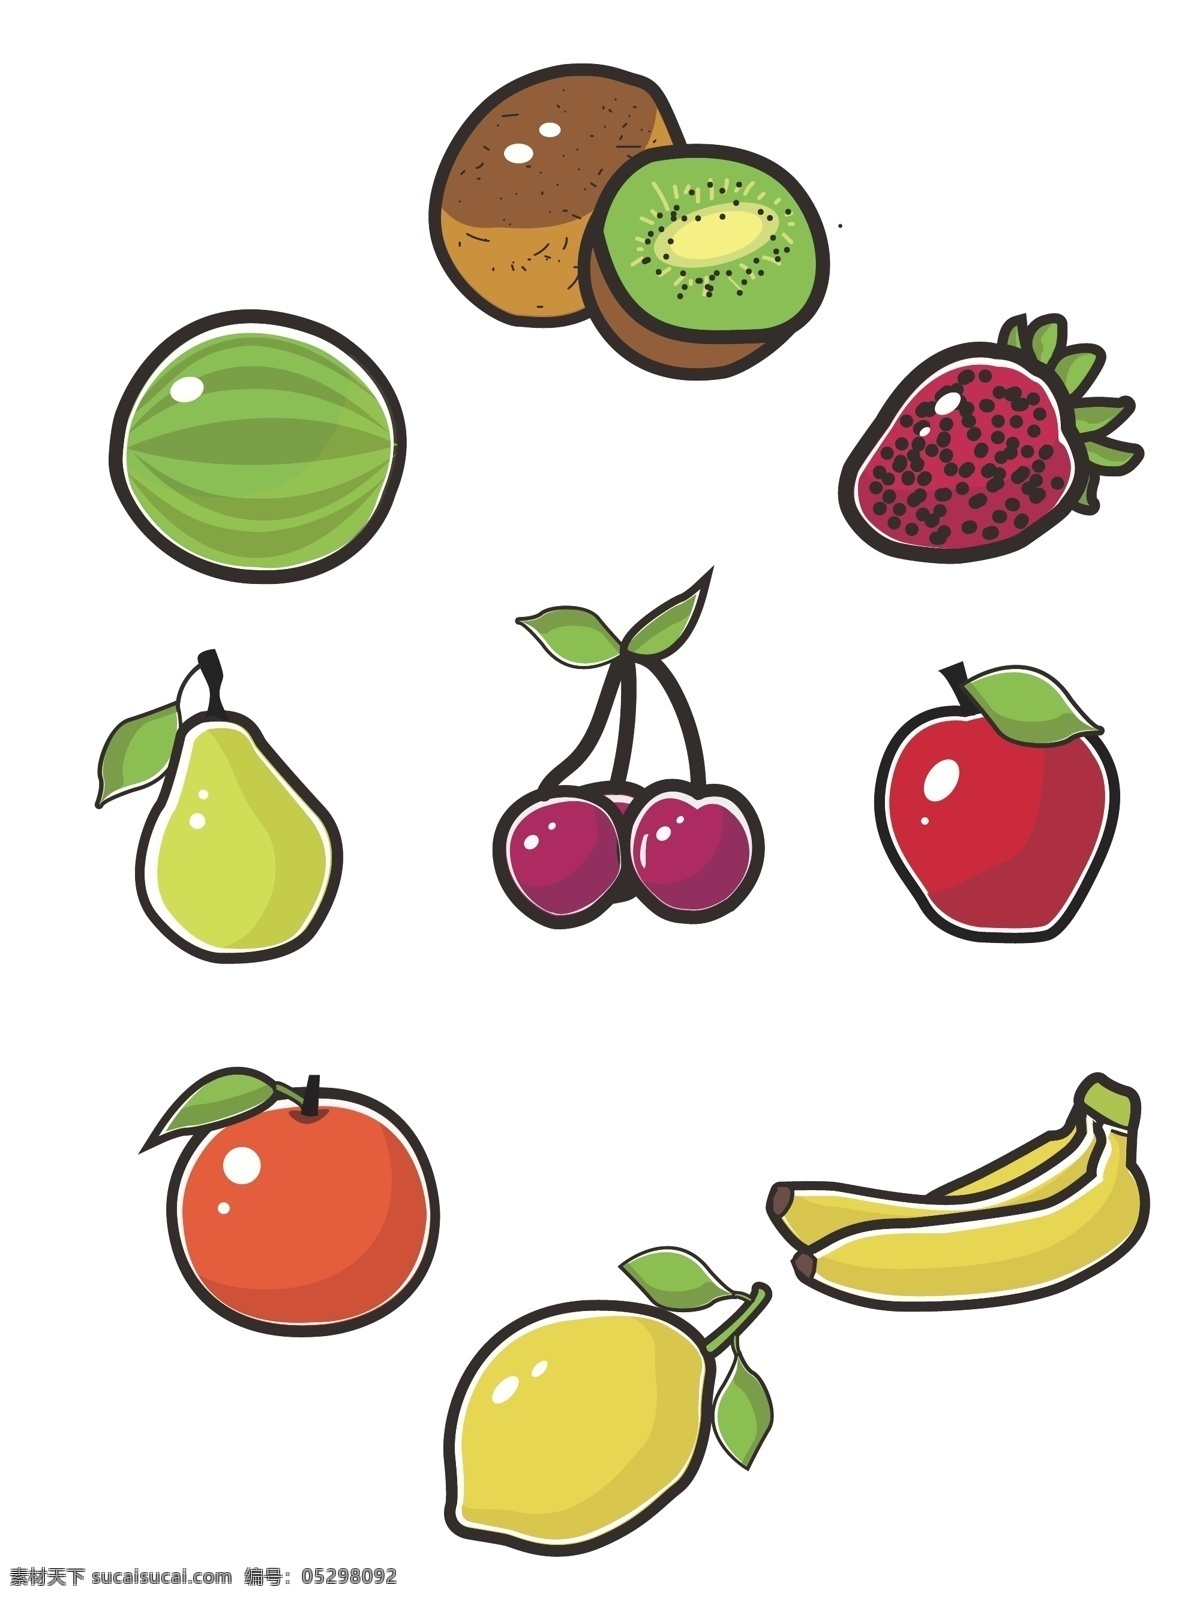 矢量 简约 小 清新 水果 集合 商用 元素 草莓 苹果 柠檬 小清新 装饰图案 西瓜 猕猴桃 梨 樱桃 橙子 香蕉 手绘